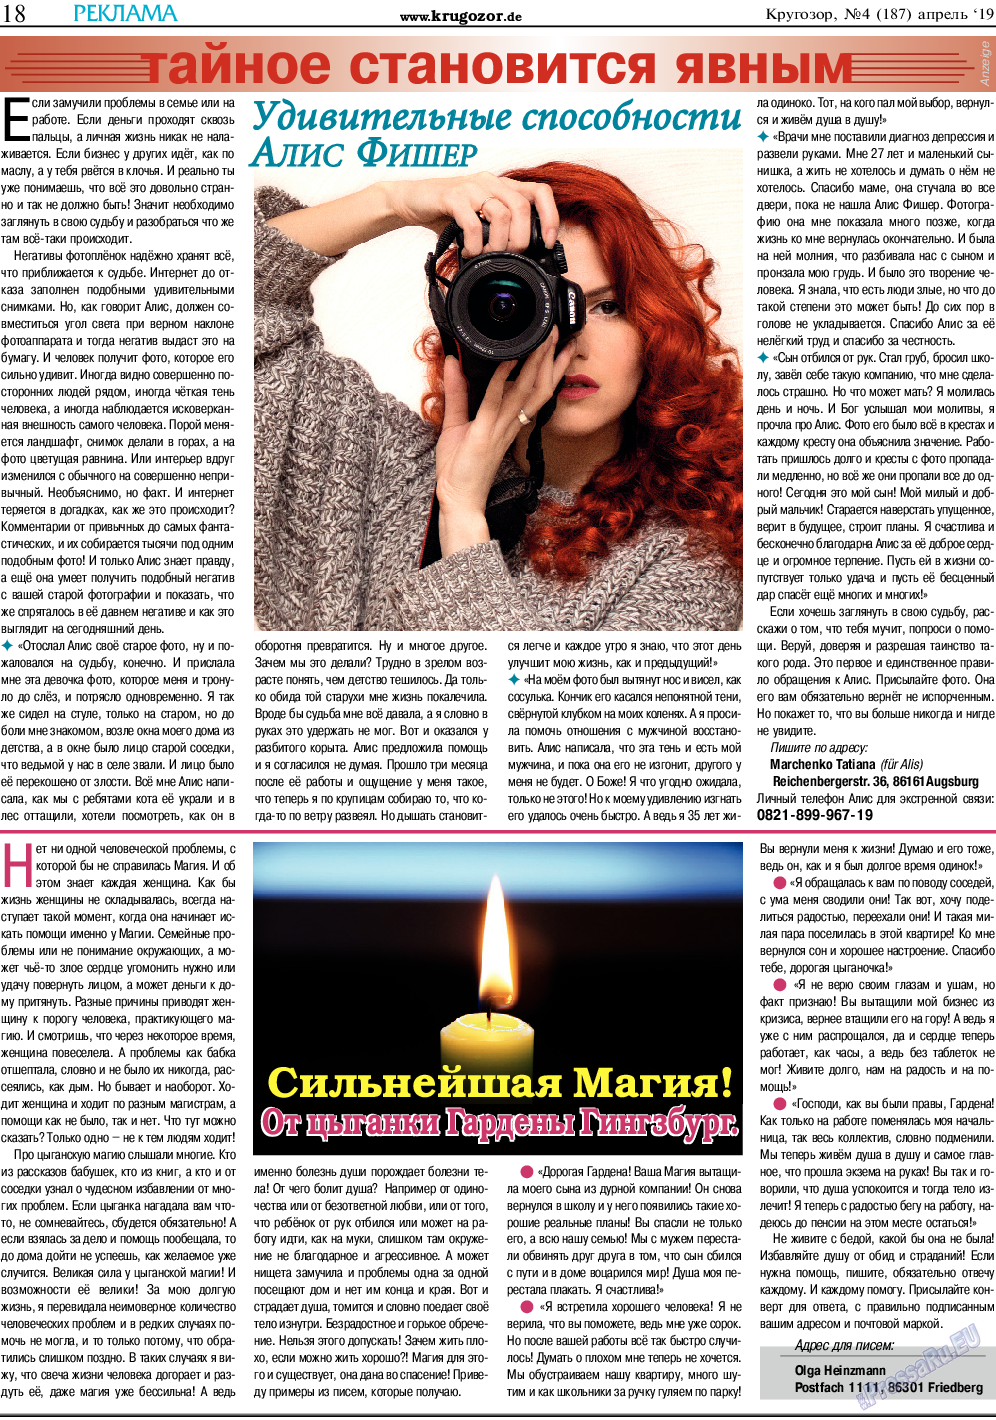 Кругозор (газета). 2019 год, номер 4, стр. 18